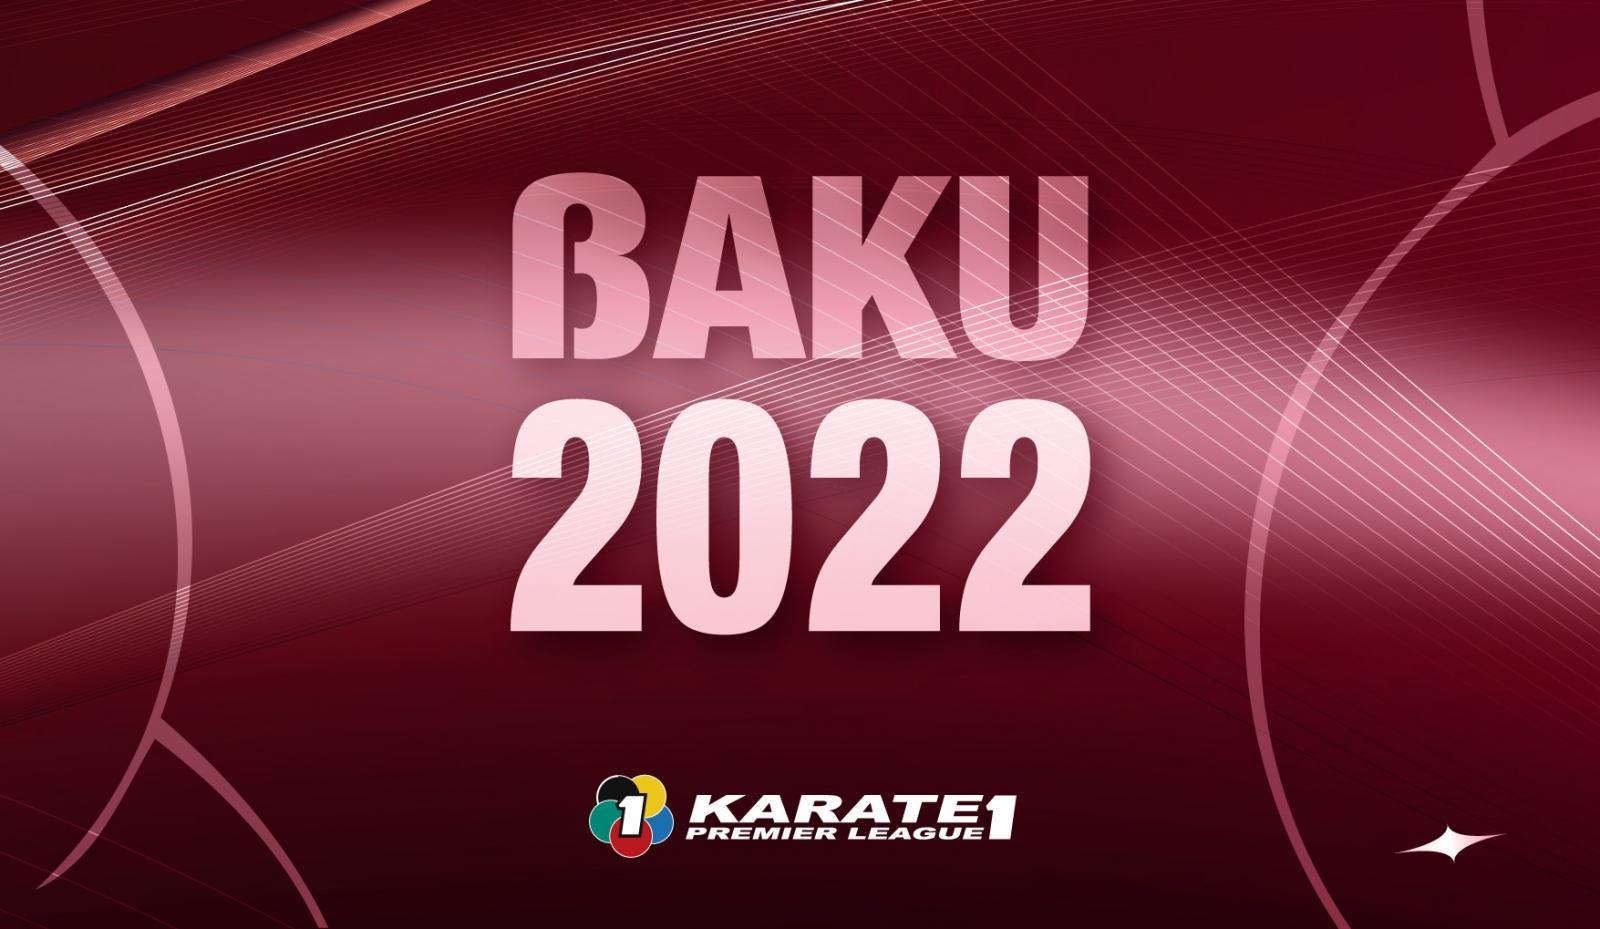 Vuoden neljäs Premier Liigan osakilpailu käydään Bakussa - Suomen  Karateliitto ry